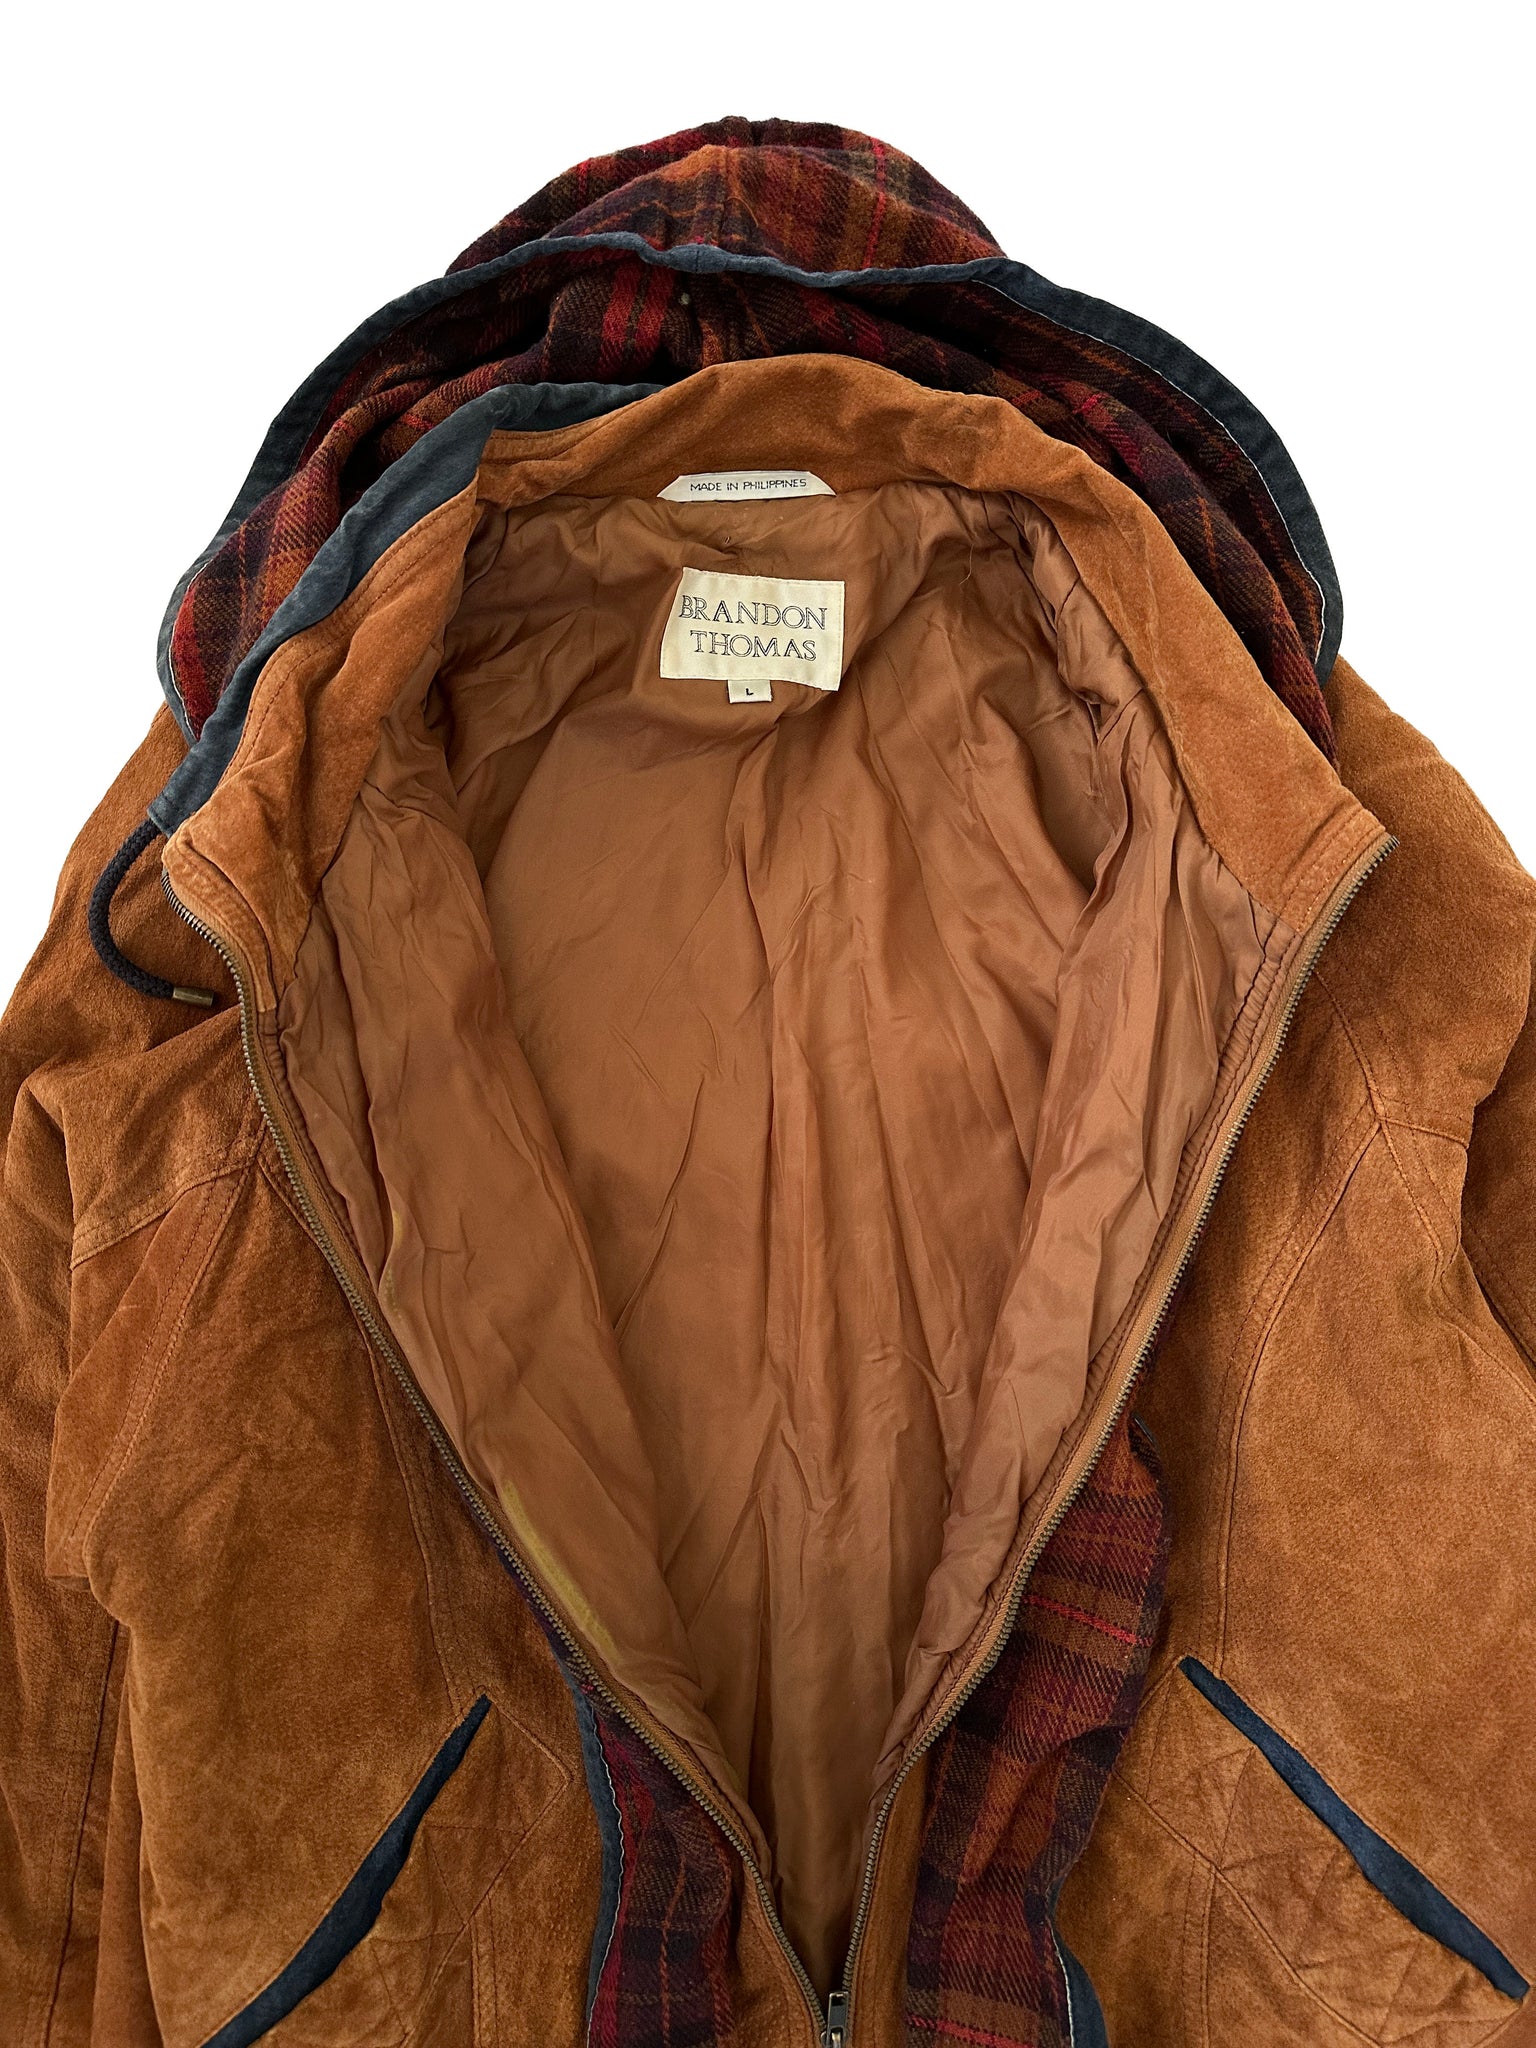 brown suede plaid jacket